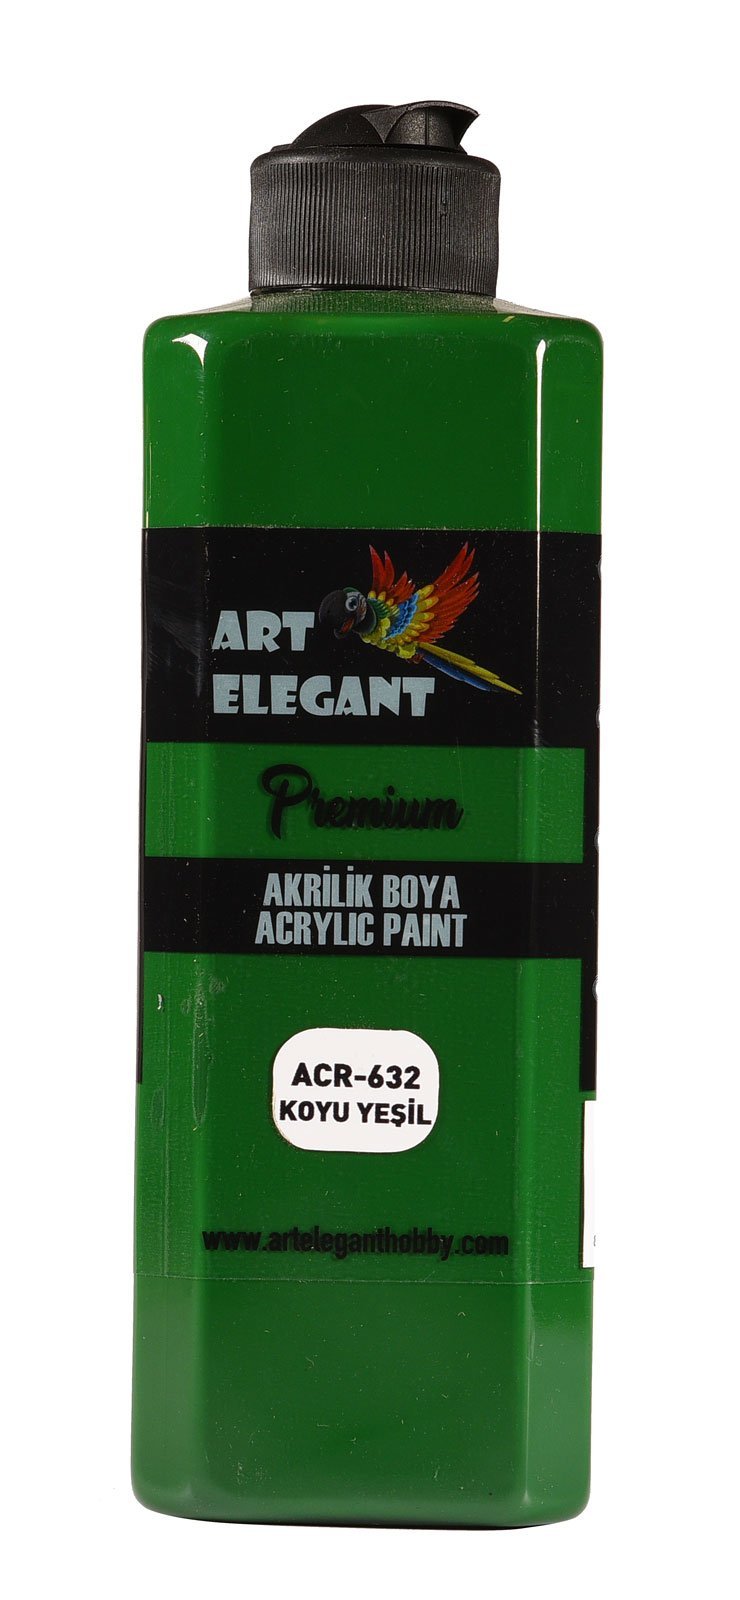 Art Elegant Akrilik Boya 400ml Acr-632 Koyu Yeşil